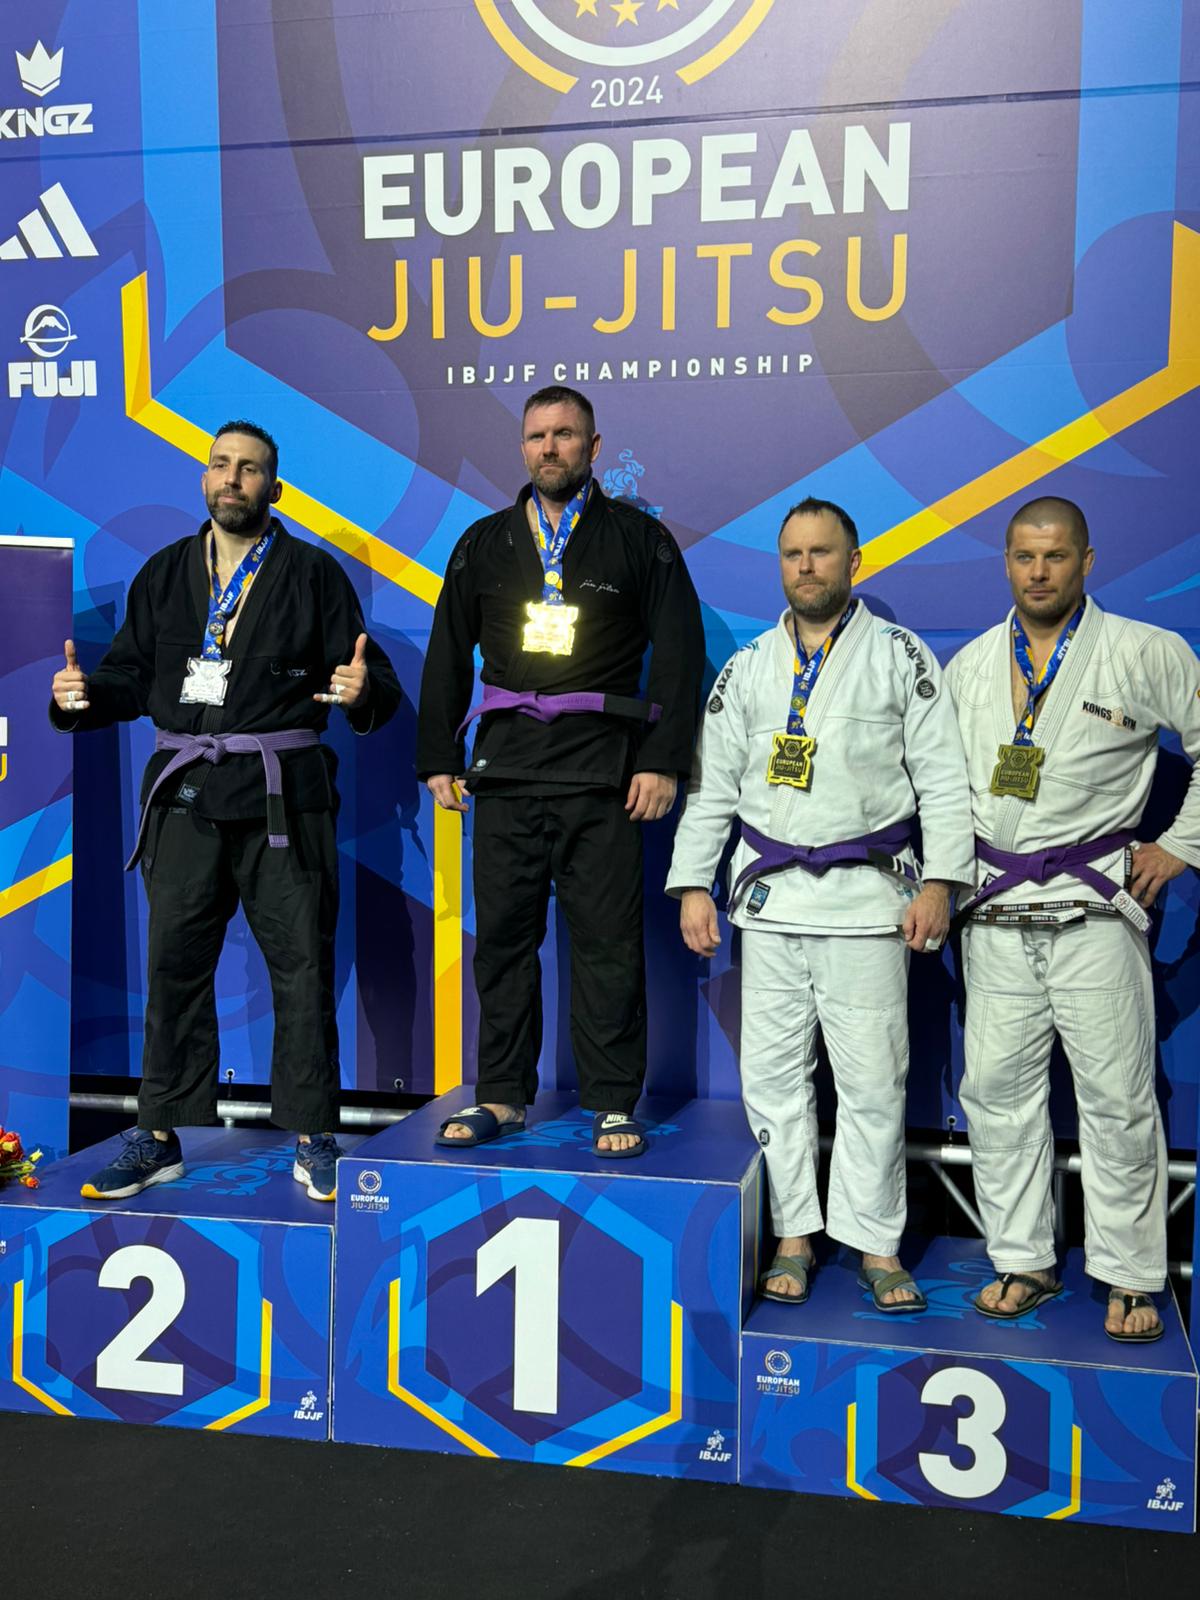 Championnats d'Europe de Jiu-Jitsu 